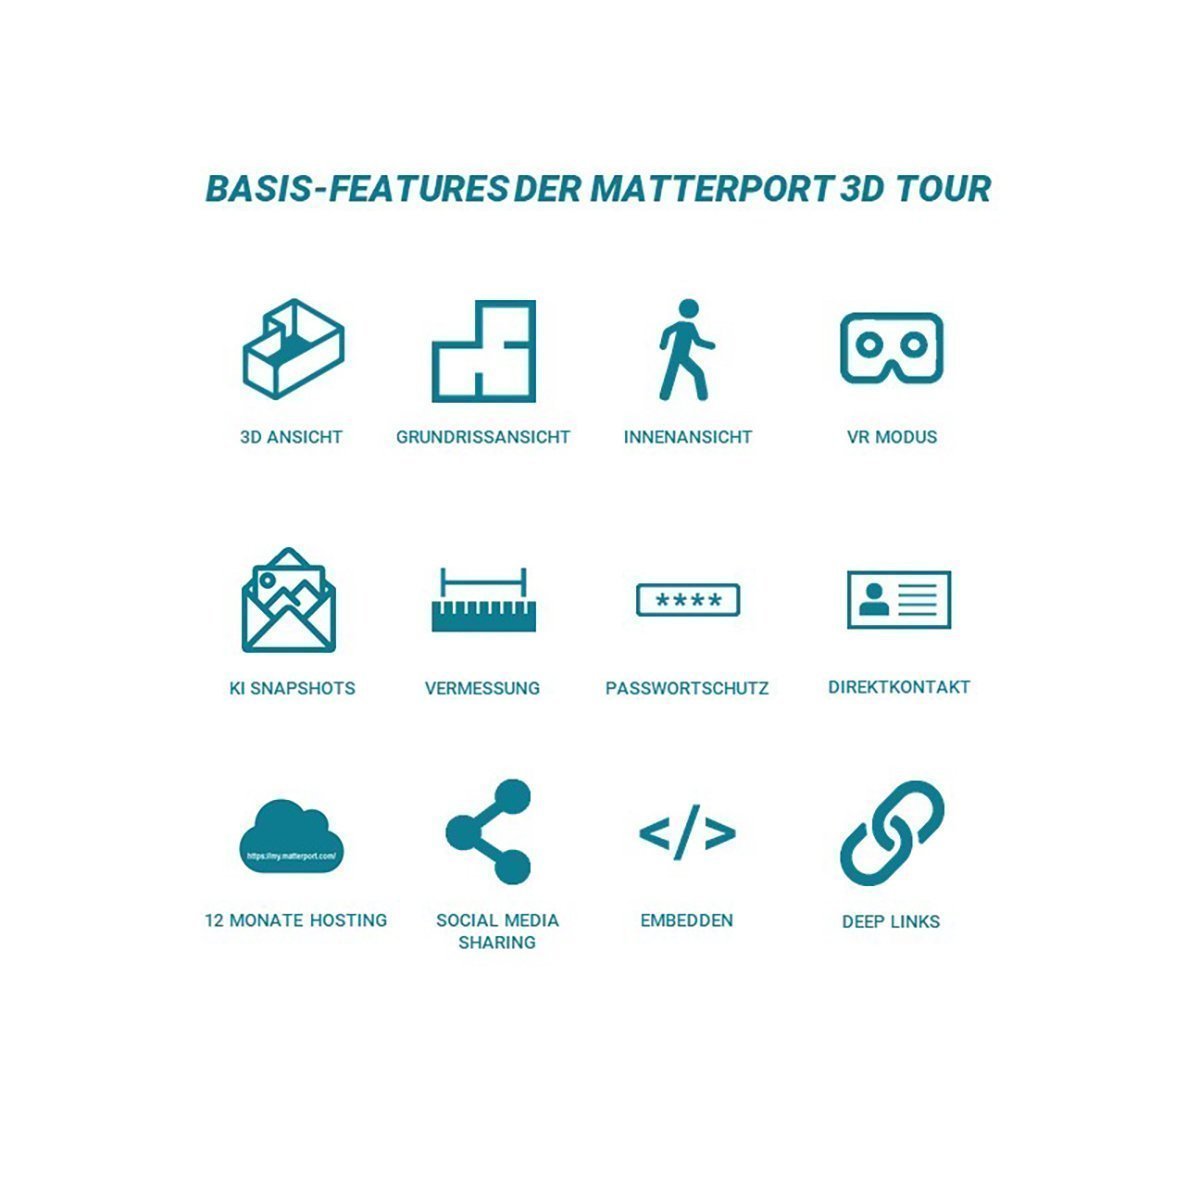 PREISBEISPIEL | MATTERPORT 3D TOUR SCAN PRO QM | LAYOUT 